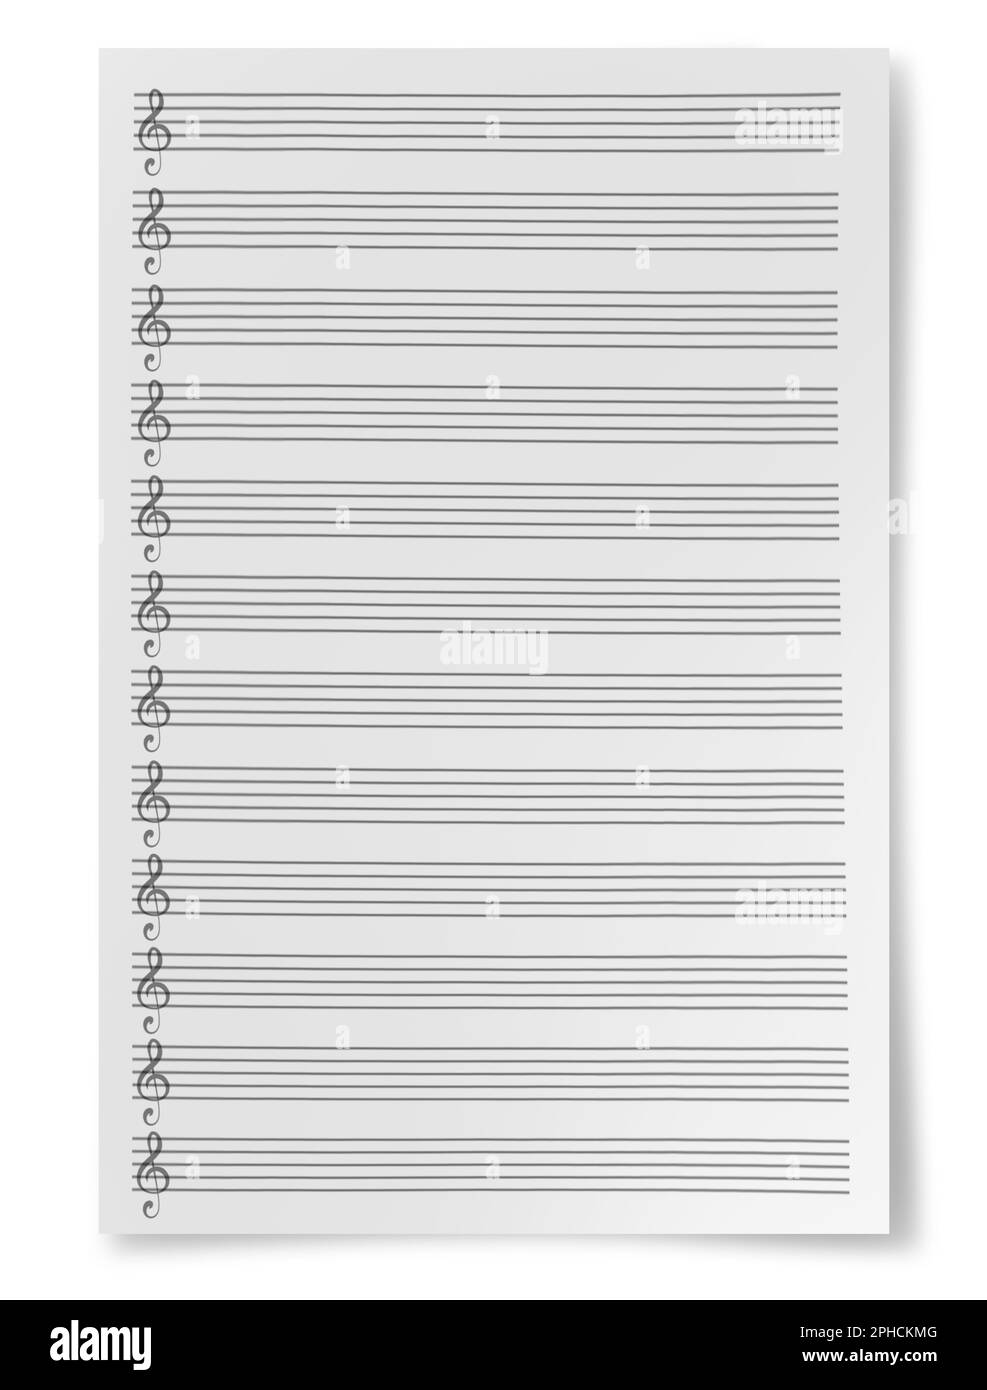 Feuille vierge composition de musique personnel de manuscrit isolé sur fond blanc Banque D'Images